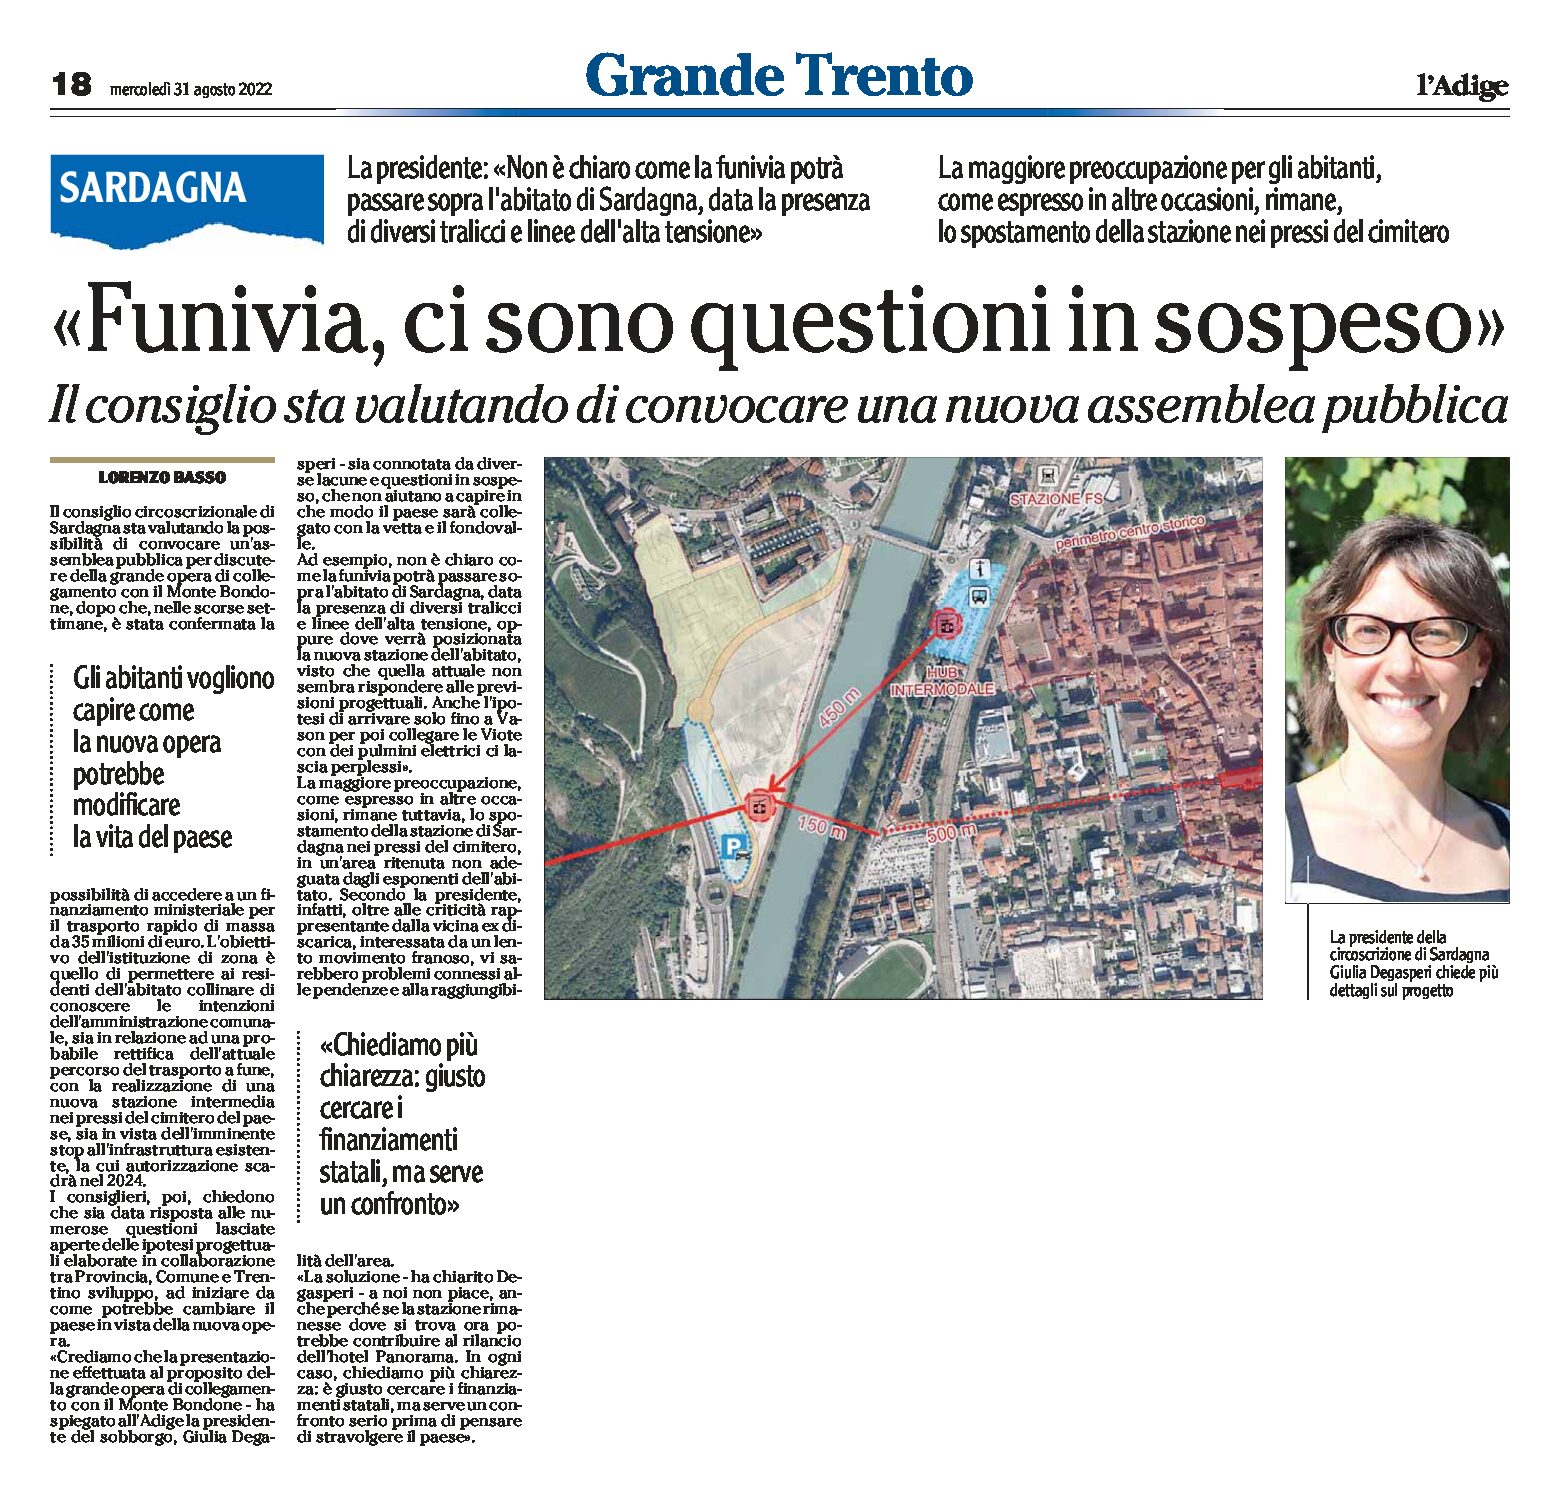 Funivia Trento-Bondone: Degasperi, circoscrizione Sardagna, “ci sono questioni in sospeso”